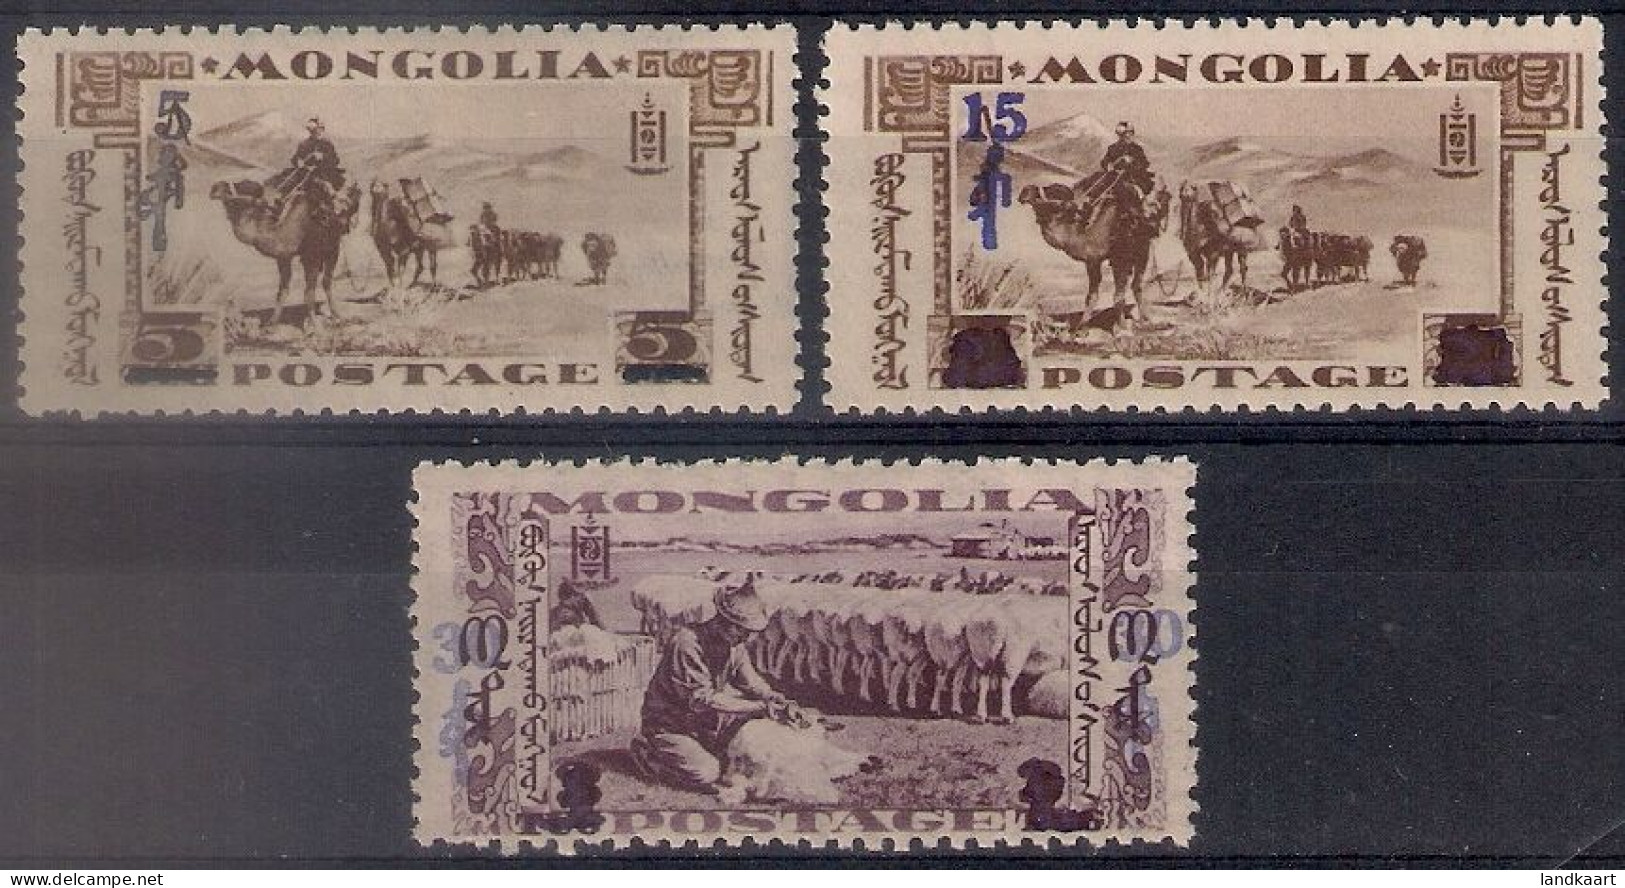 Mongolia 1932, Scott Nr 74D, 74F And 74G, MNH OG - Mongolei